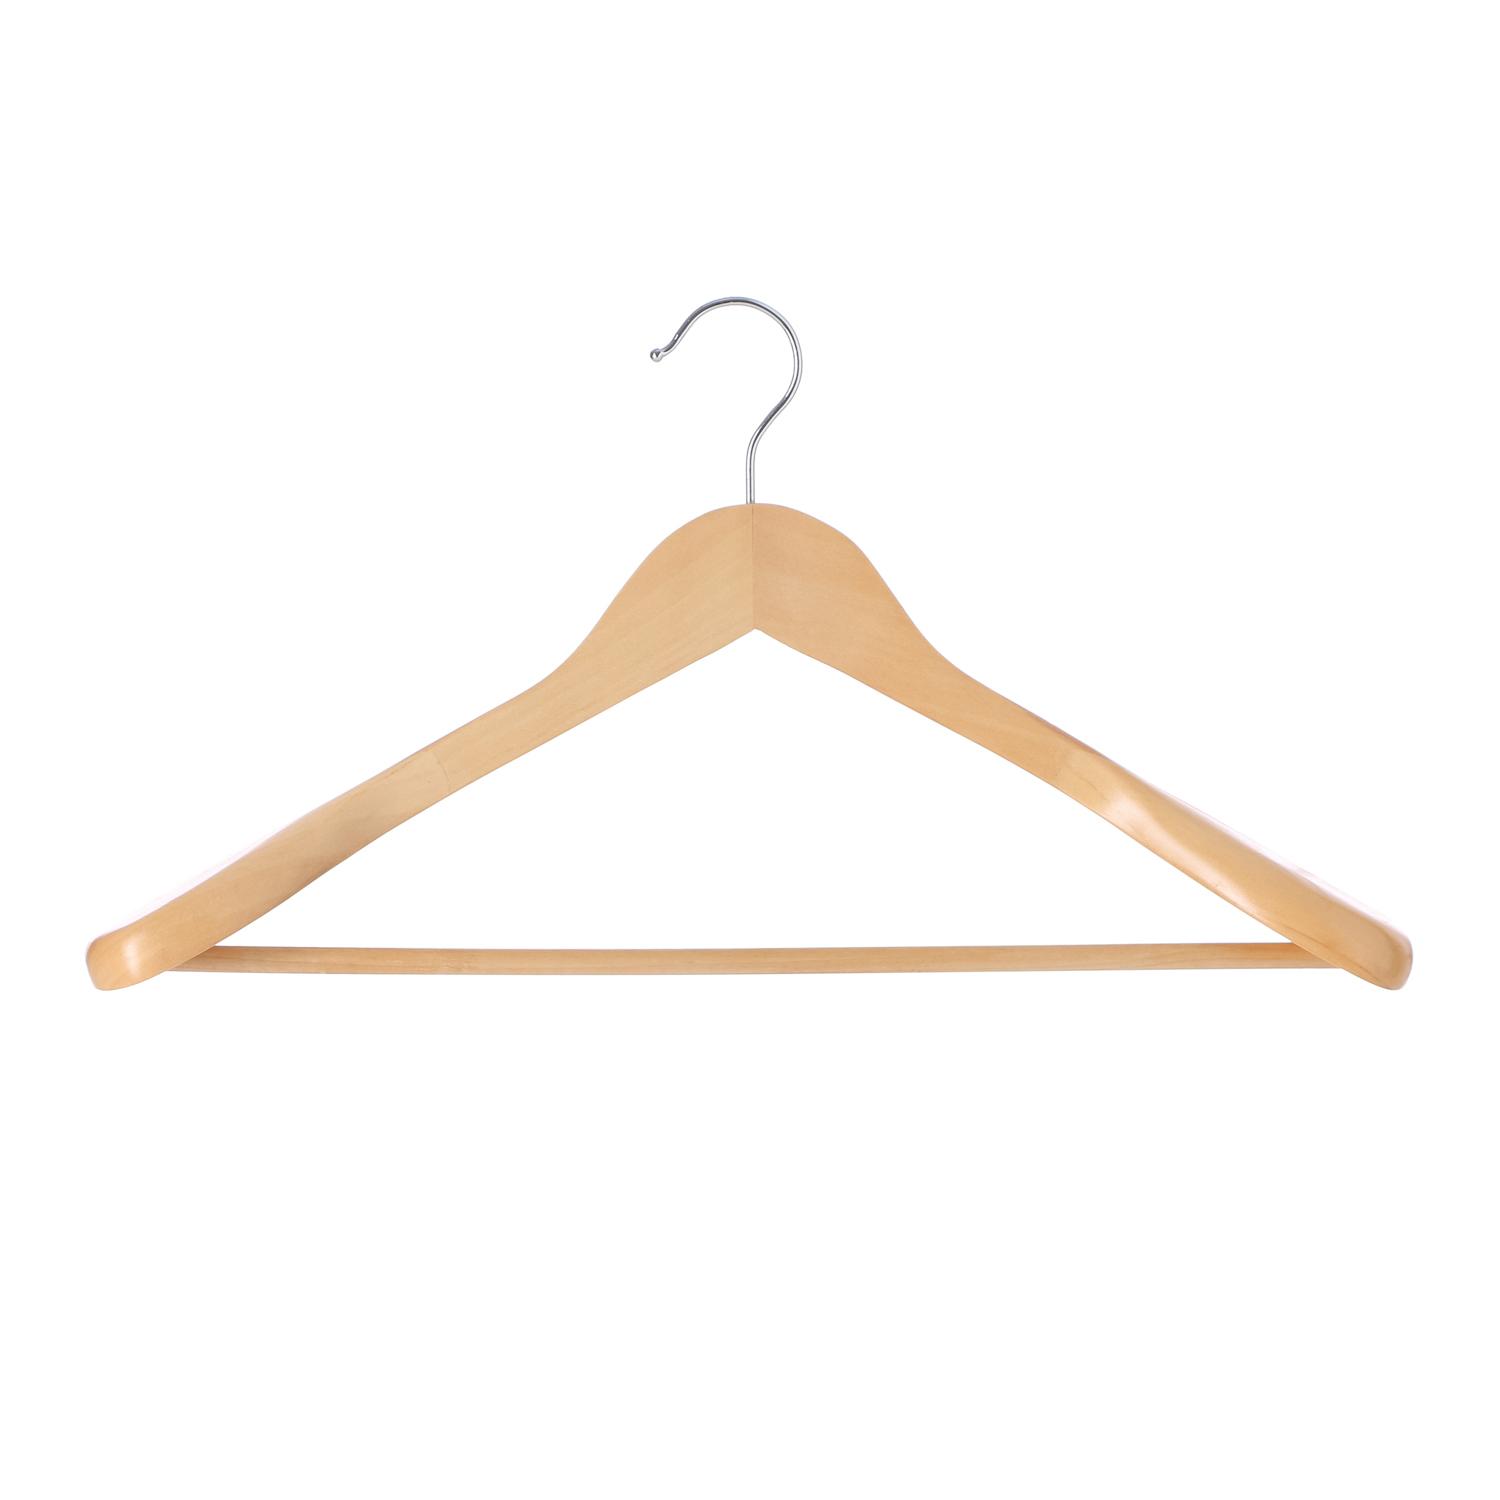 where to buy wooden coat hangers